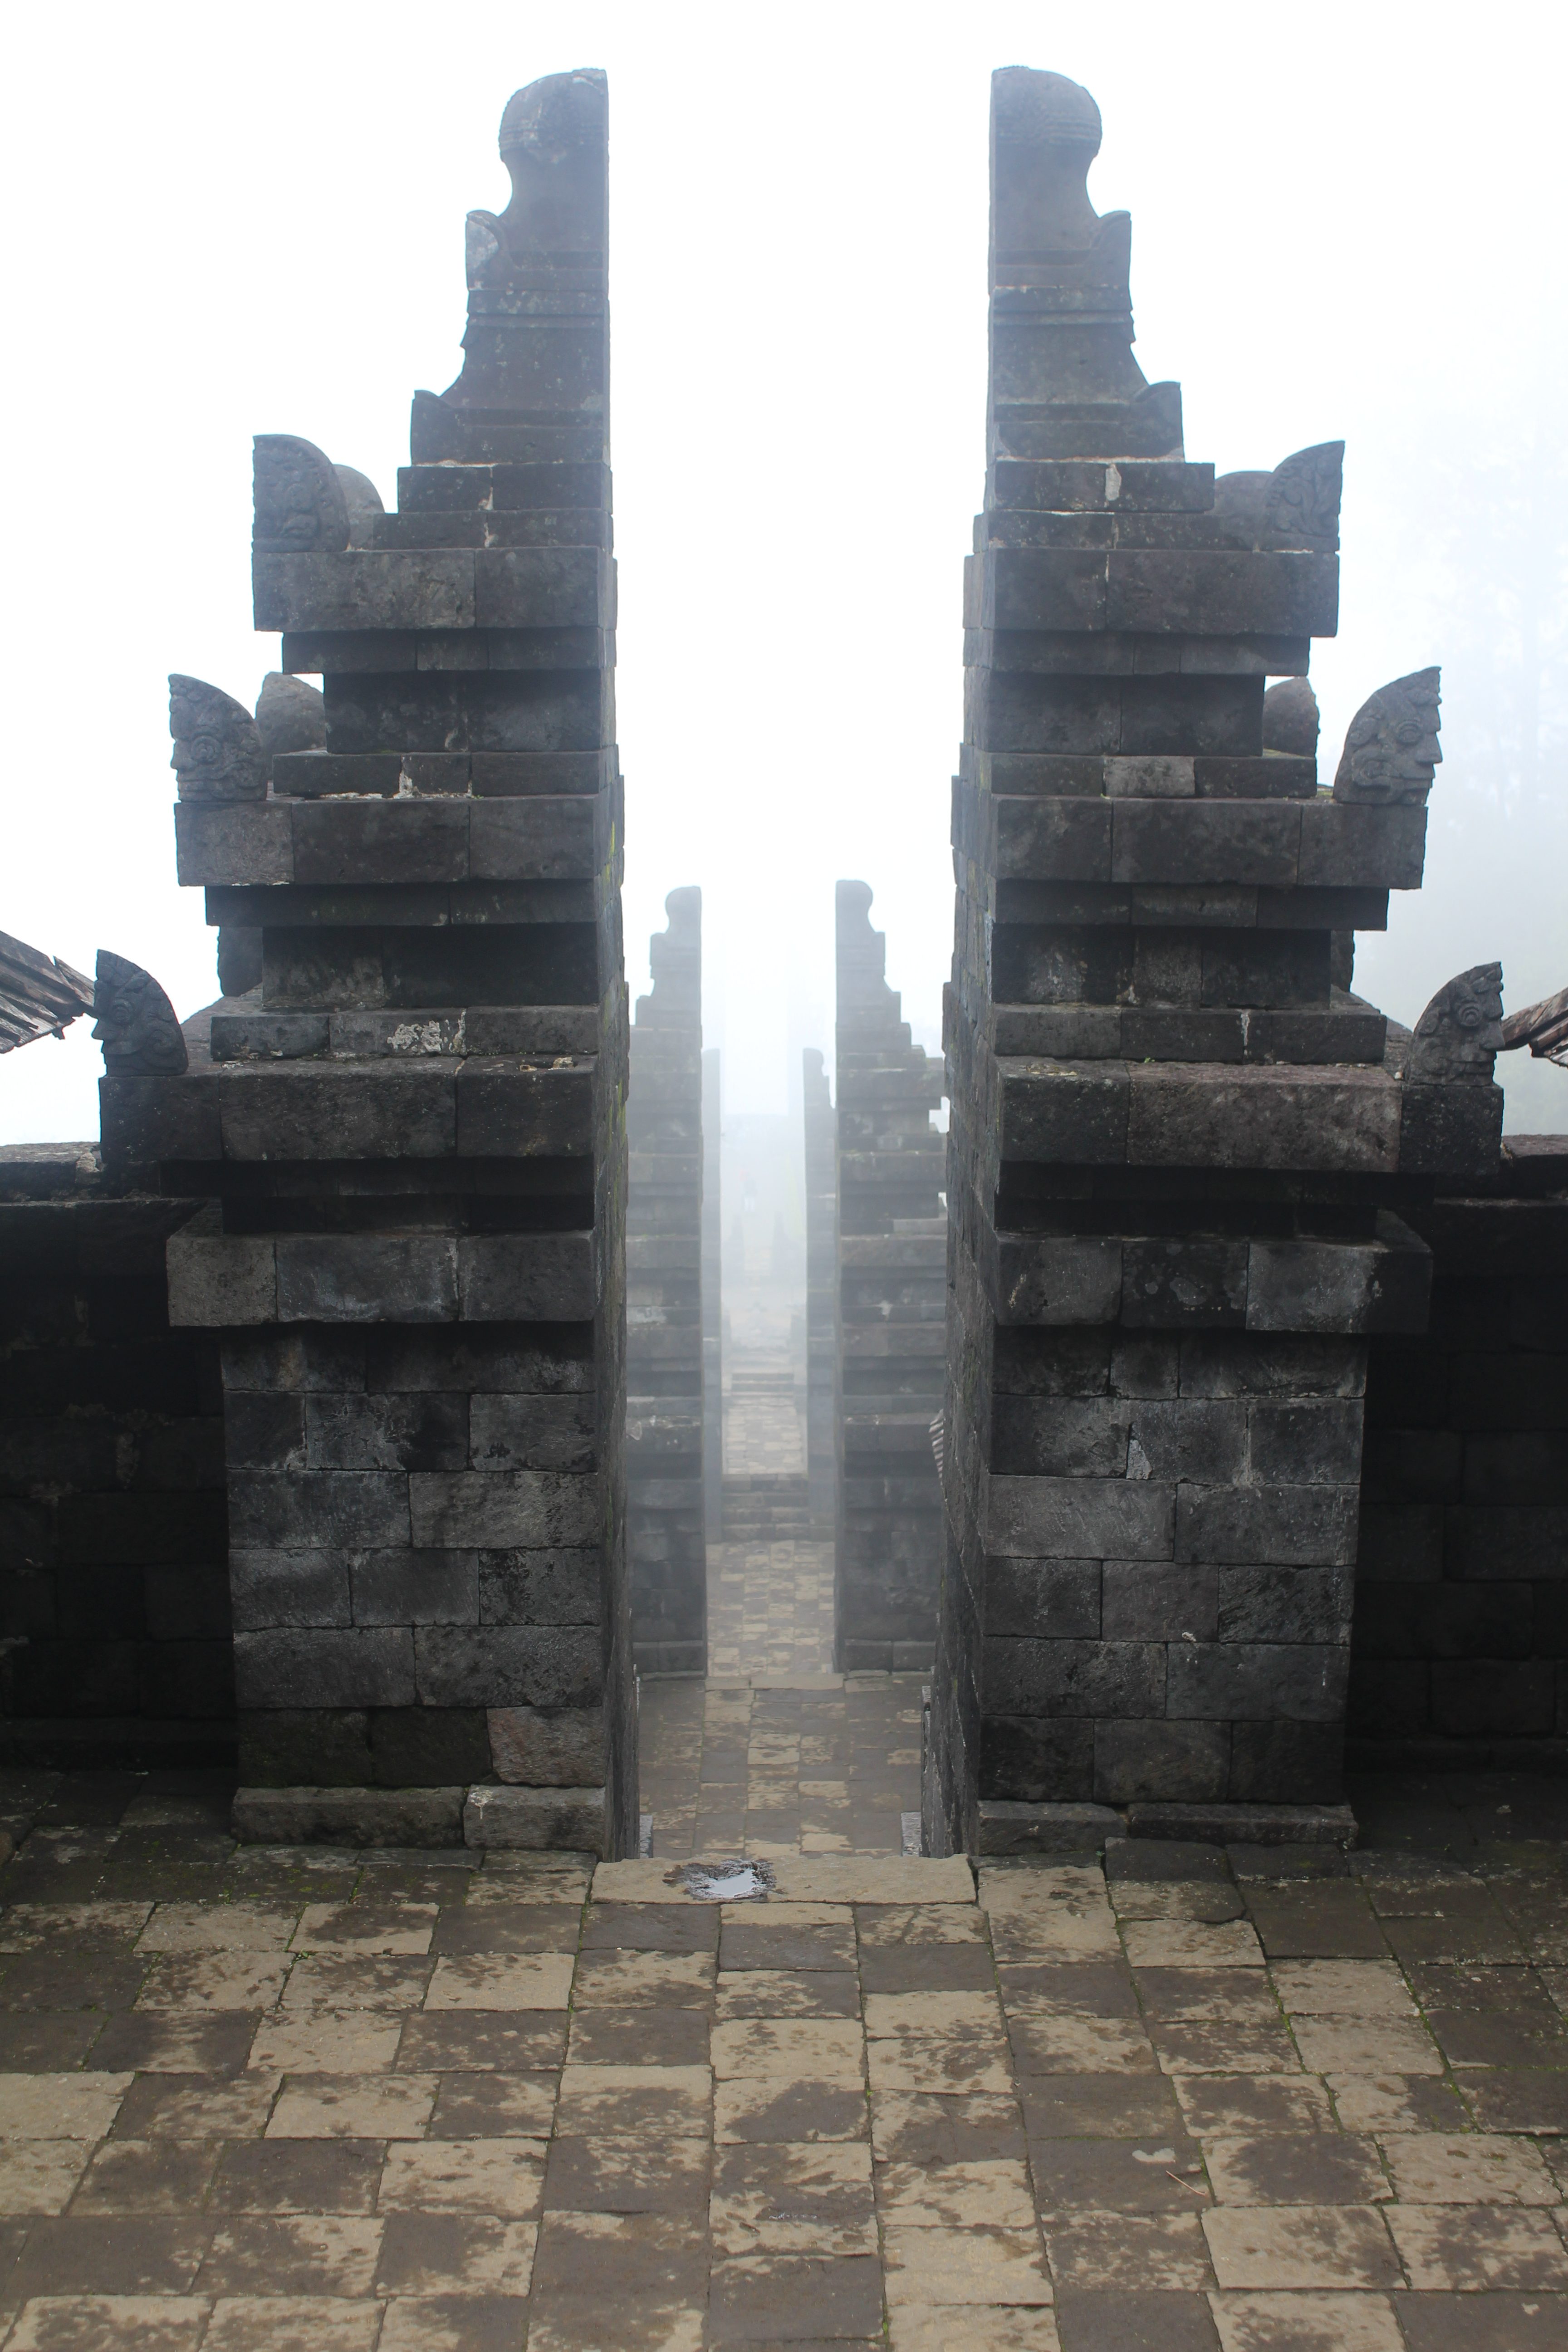 Series of split-gates in mist